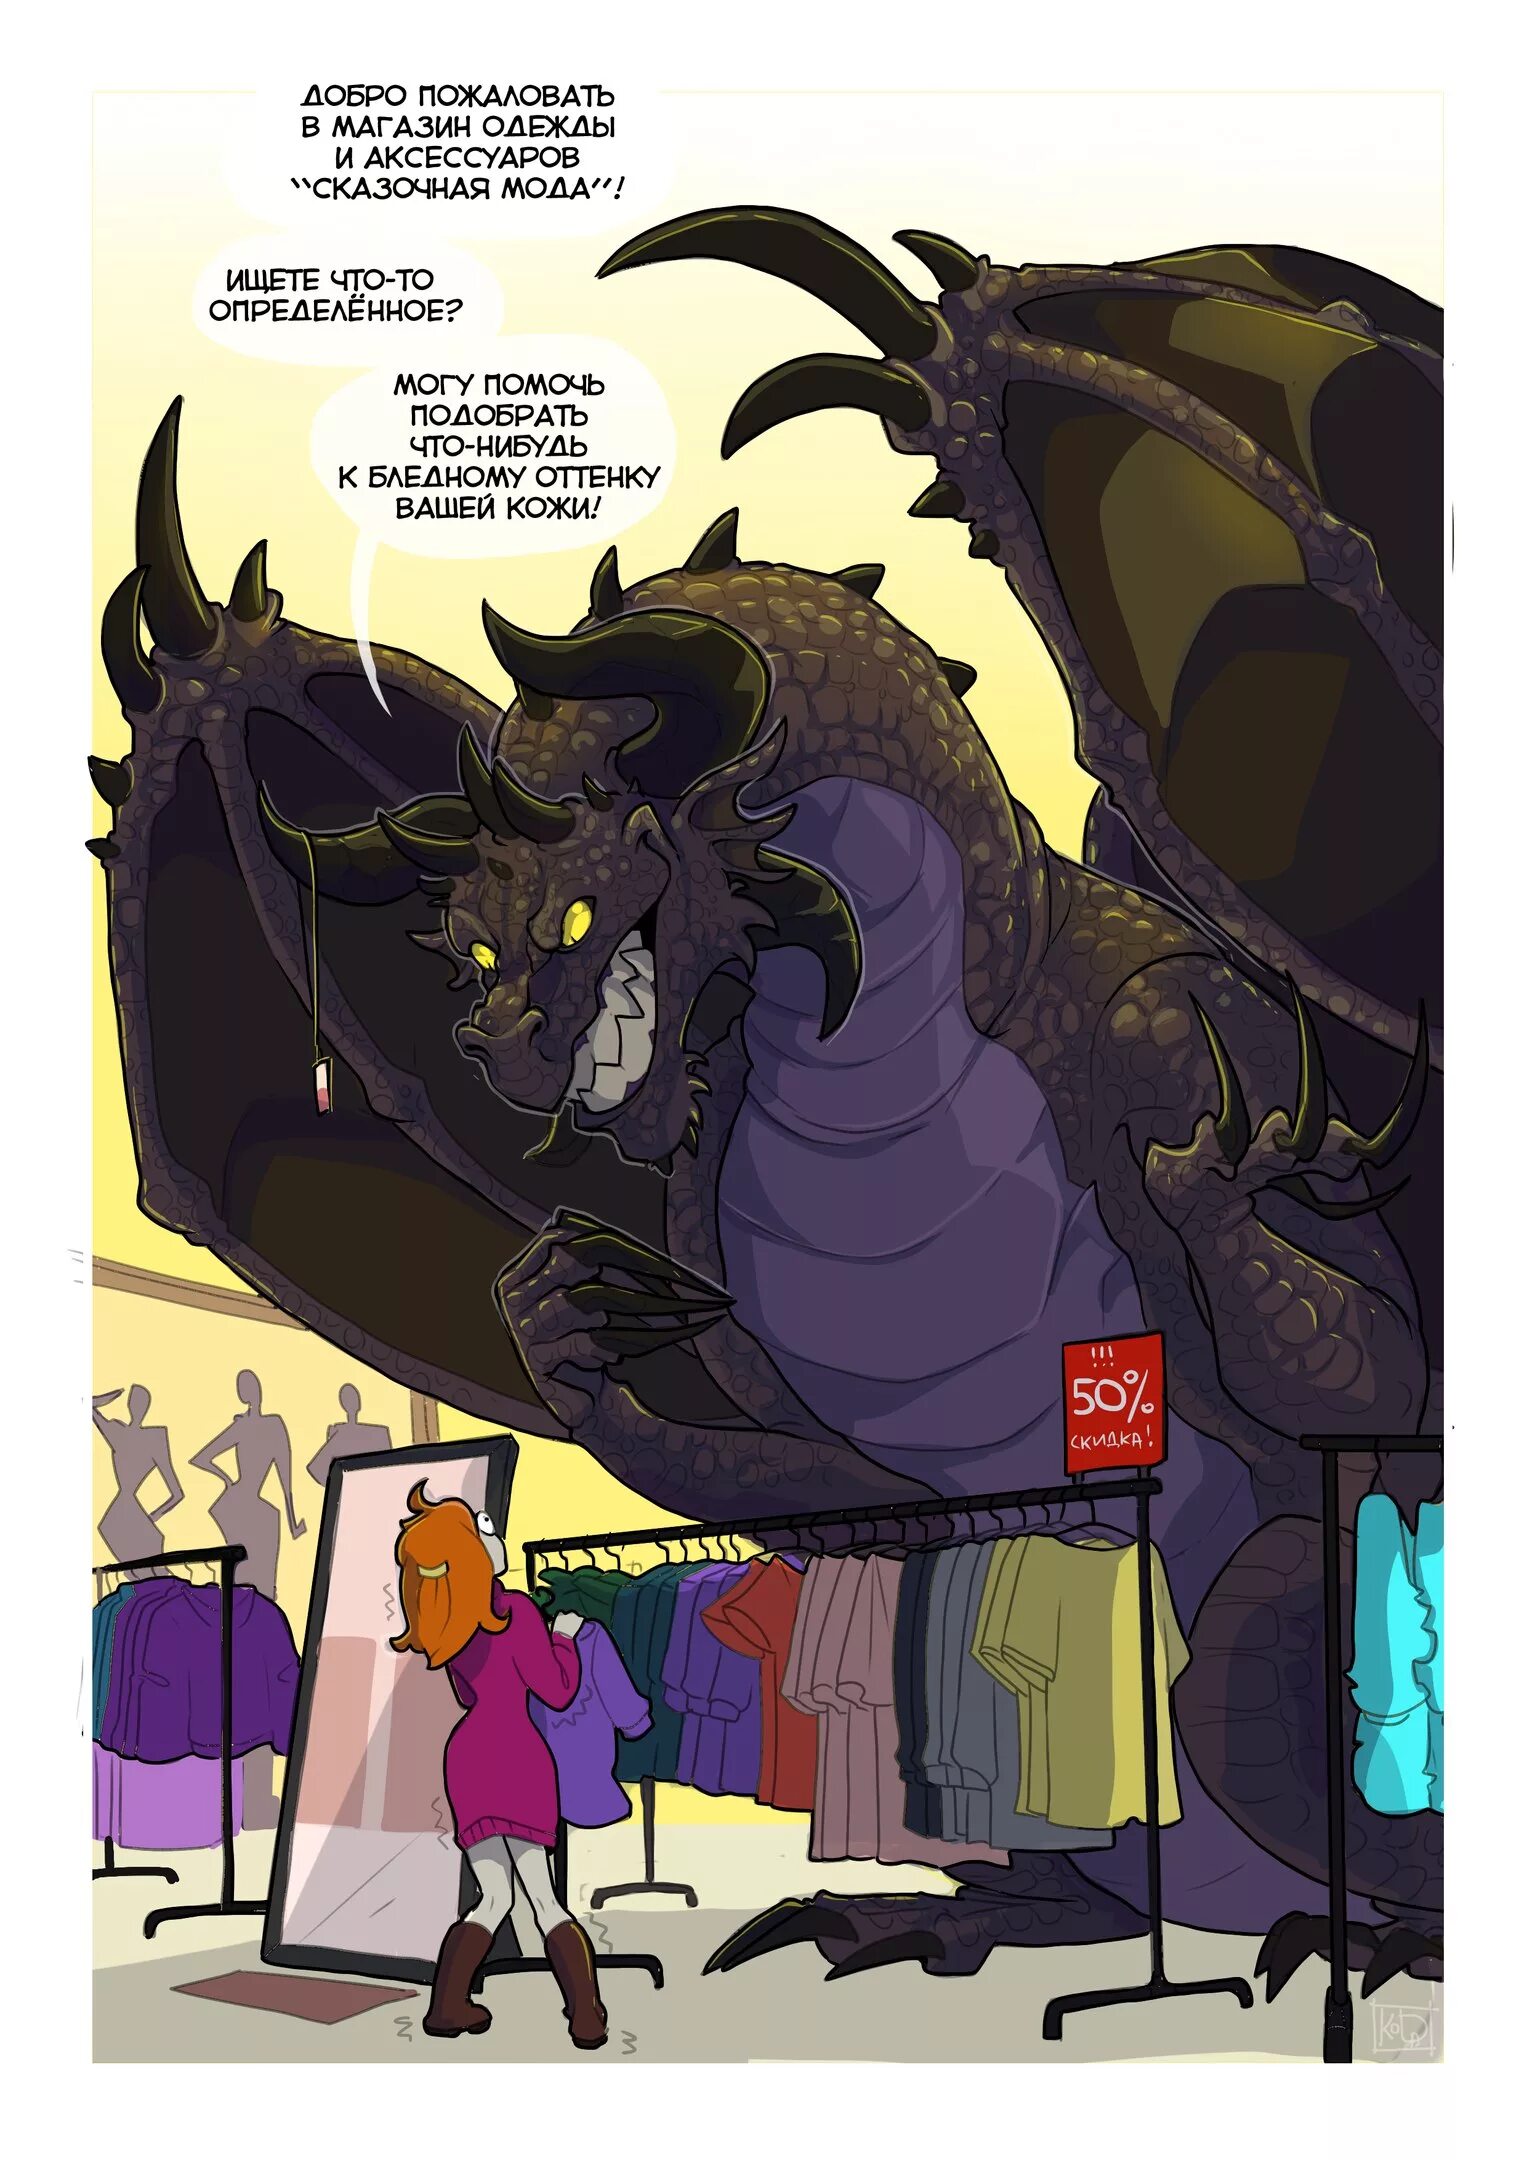 Dragon comics. Koda "драконы тоже люди". Комиксы с драконами koda. Дракон комикс. Забавные комиксы про драконов.